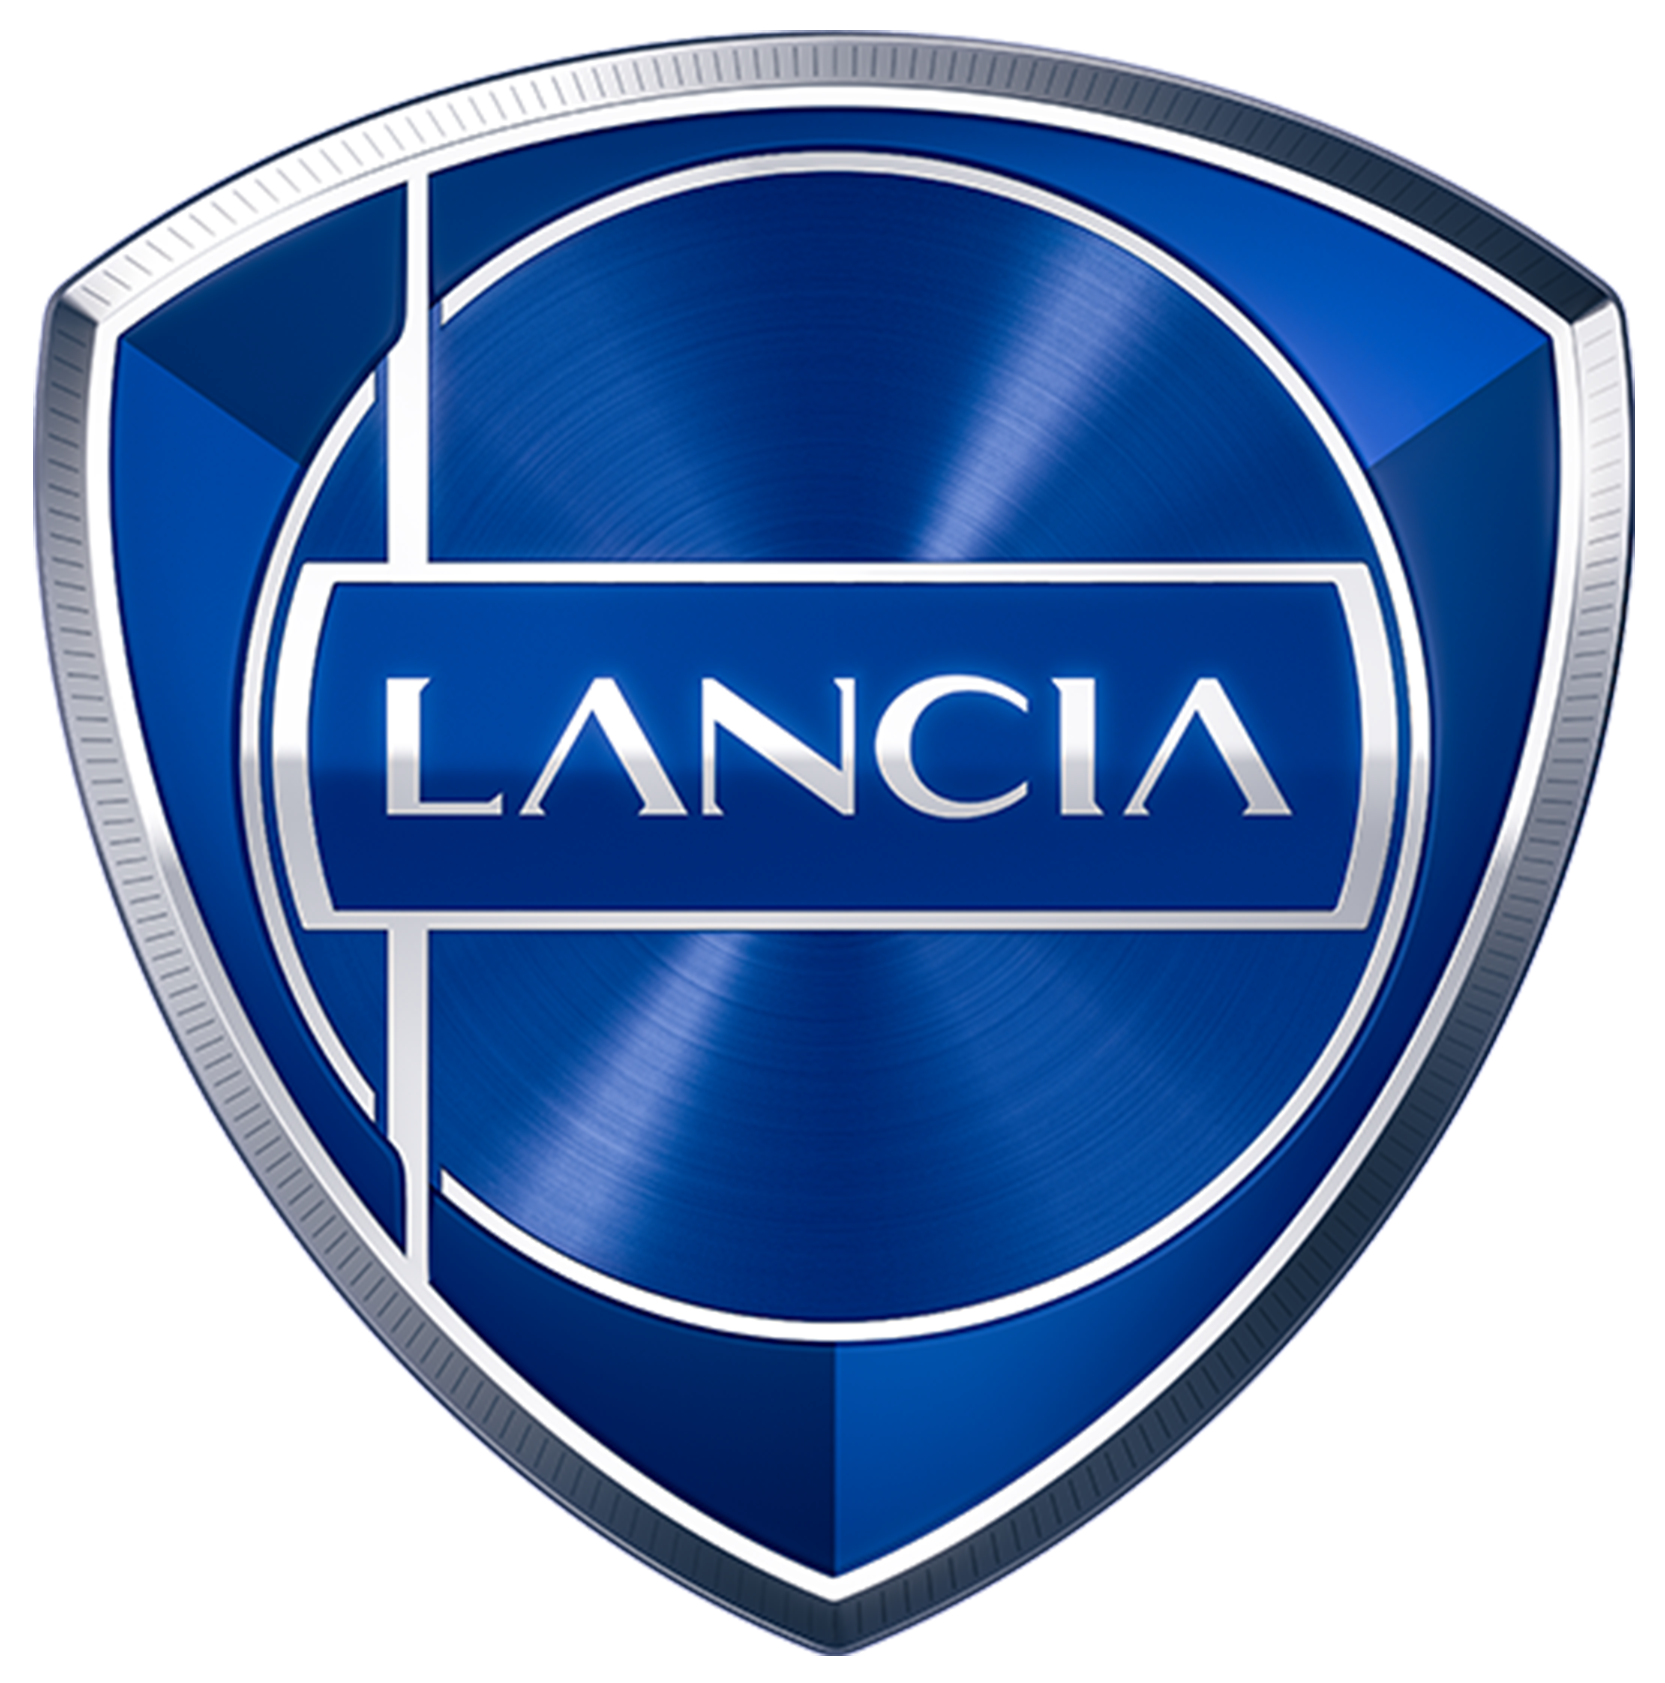 image of Lancia logo